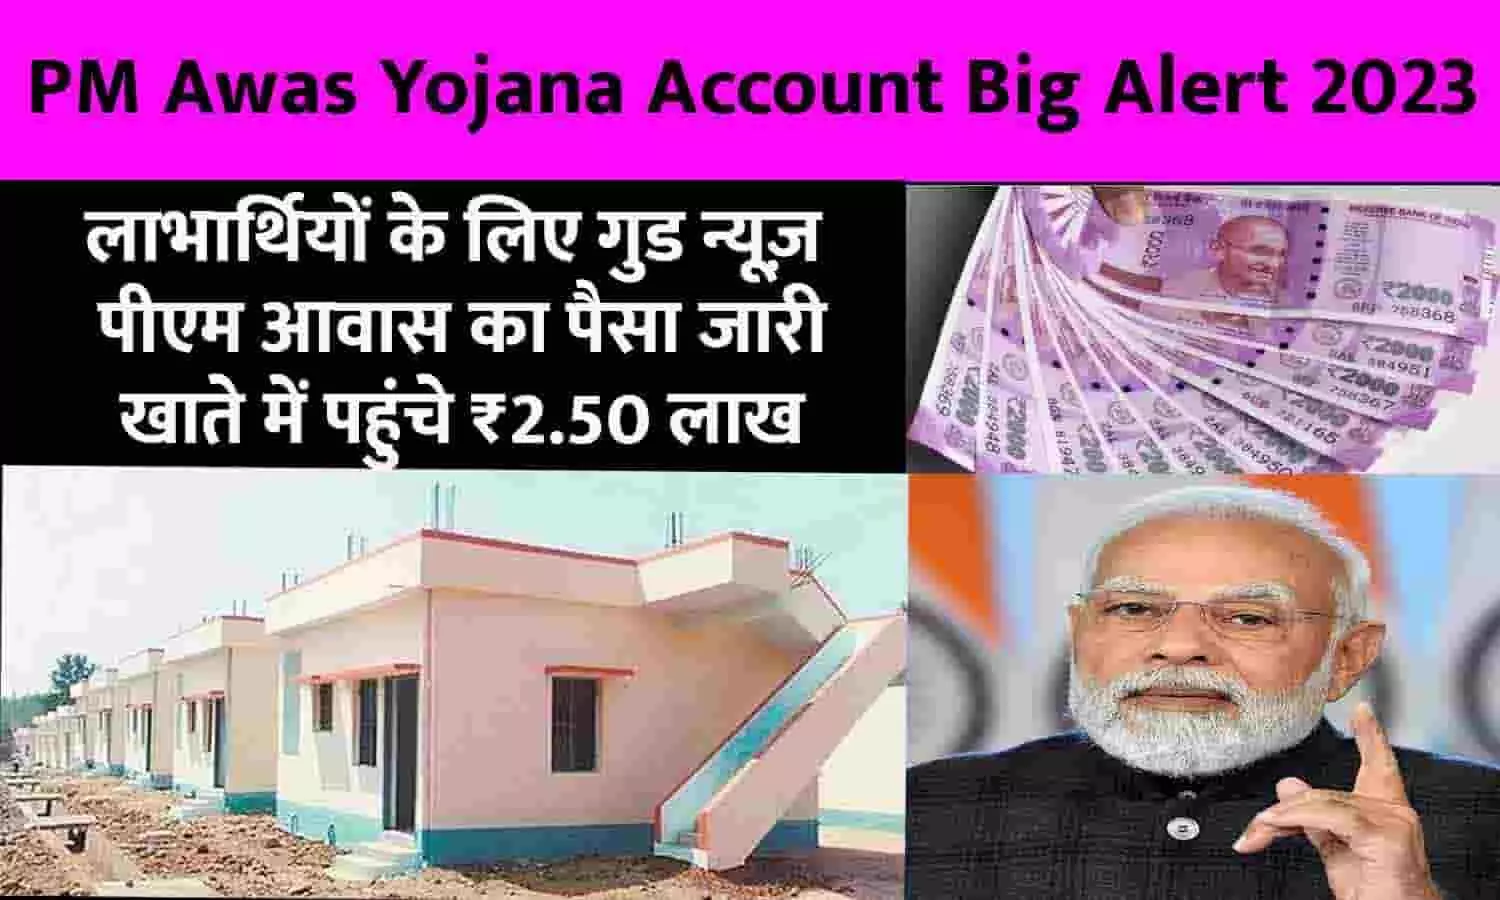 PM Awas Yojana Account Big Alert 2023: लाभार्थियों के लिए गुड न्यूज़! पीएम आवास का पैसा जारी, खाते में पहुंचे ₹2.50 लाख